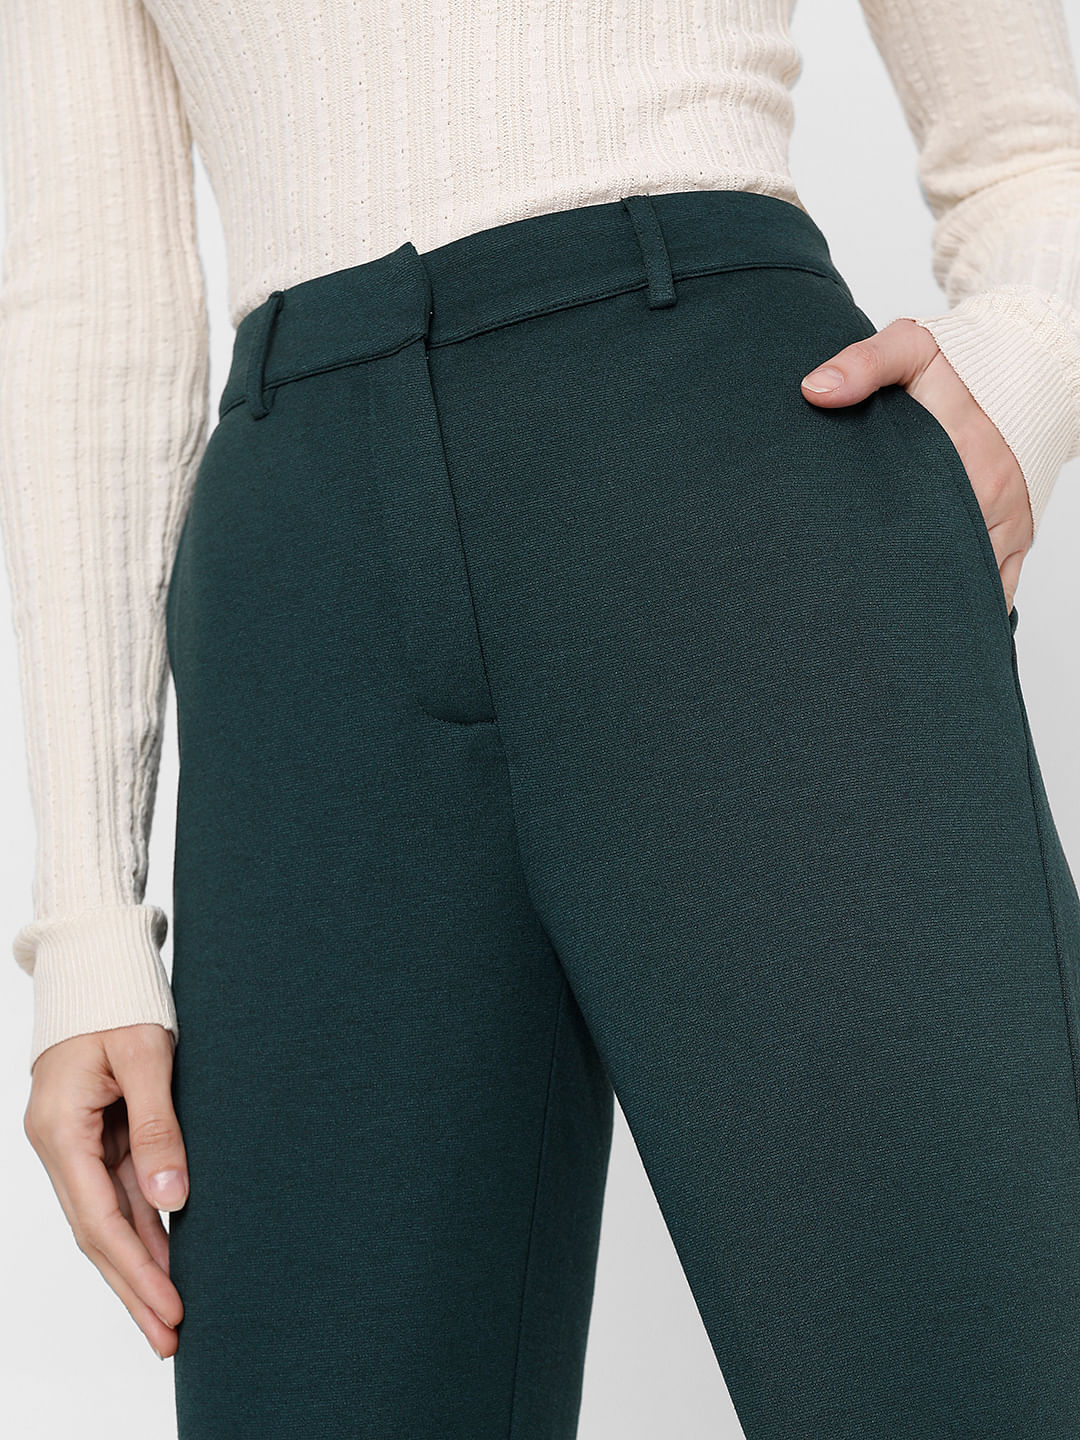 Skinny cargo trousers - Dark green - Ladies | H&M IN